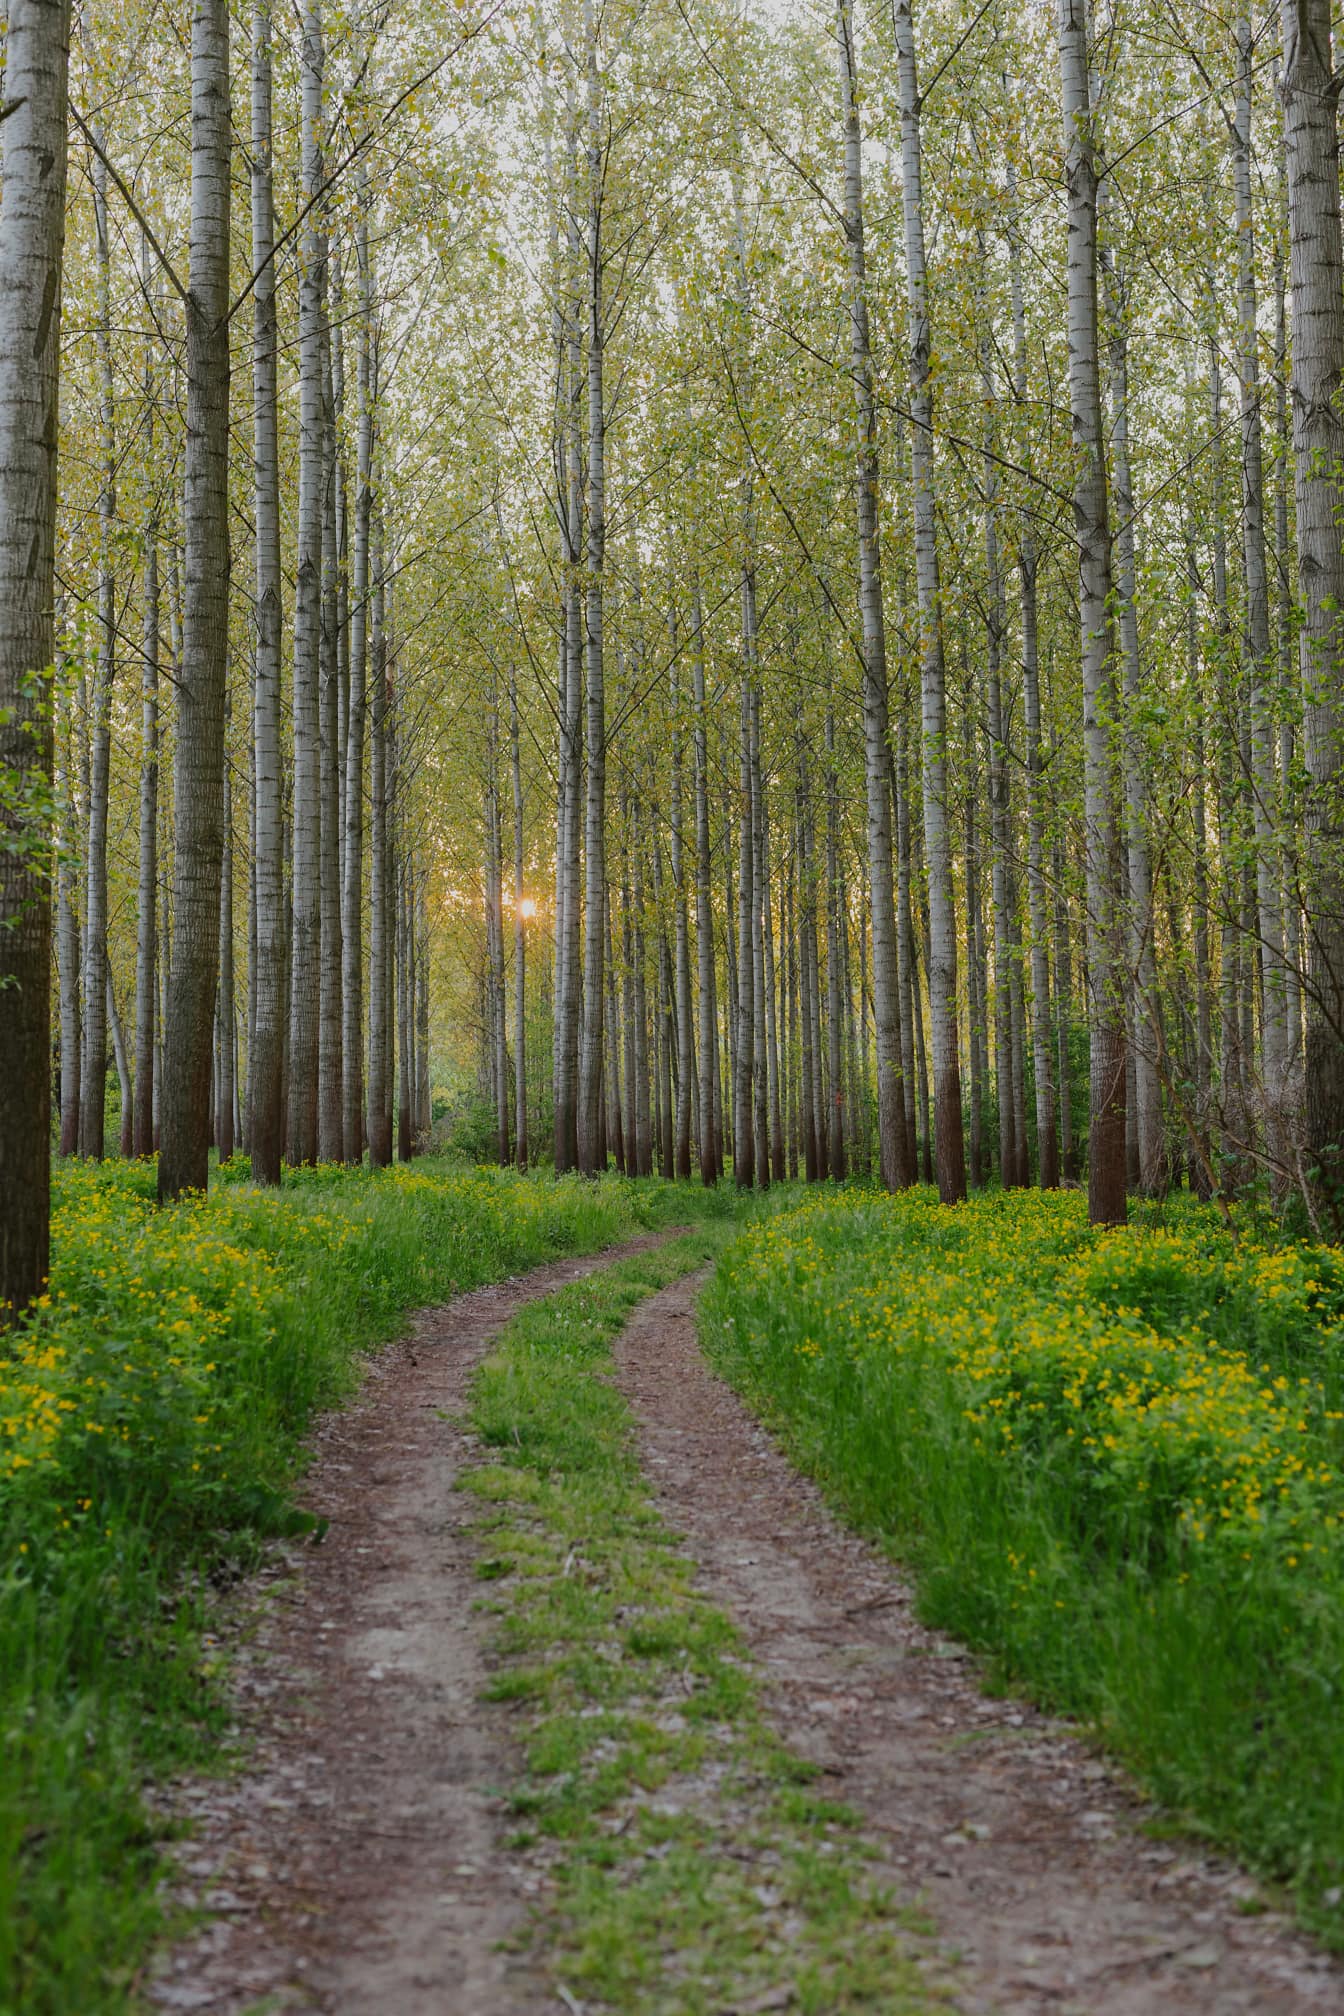 Erdei ösvény földút a sarki erdőben tavasszal